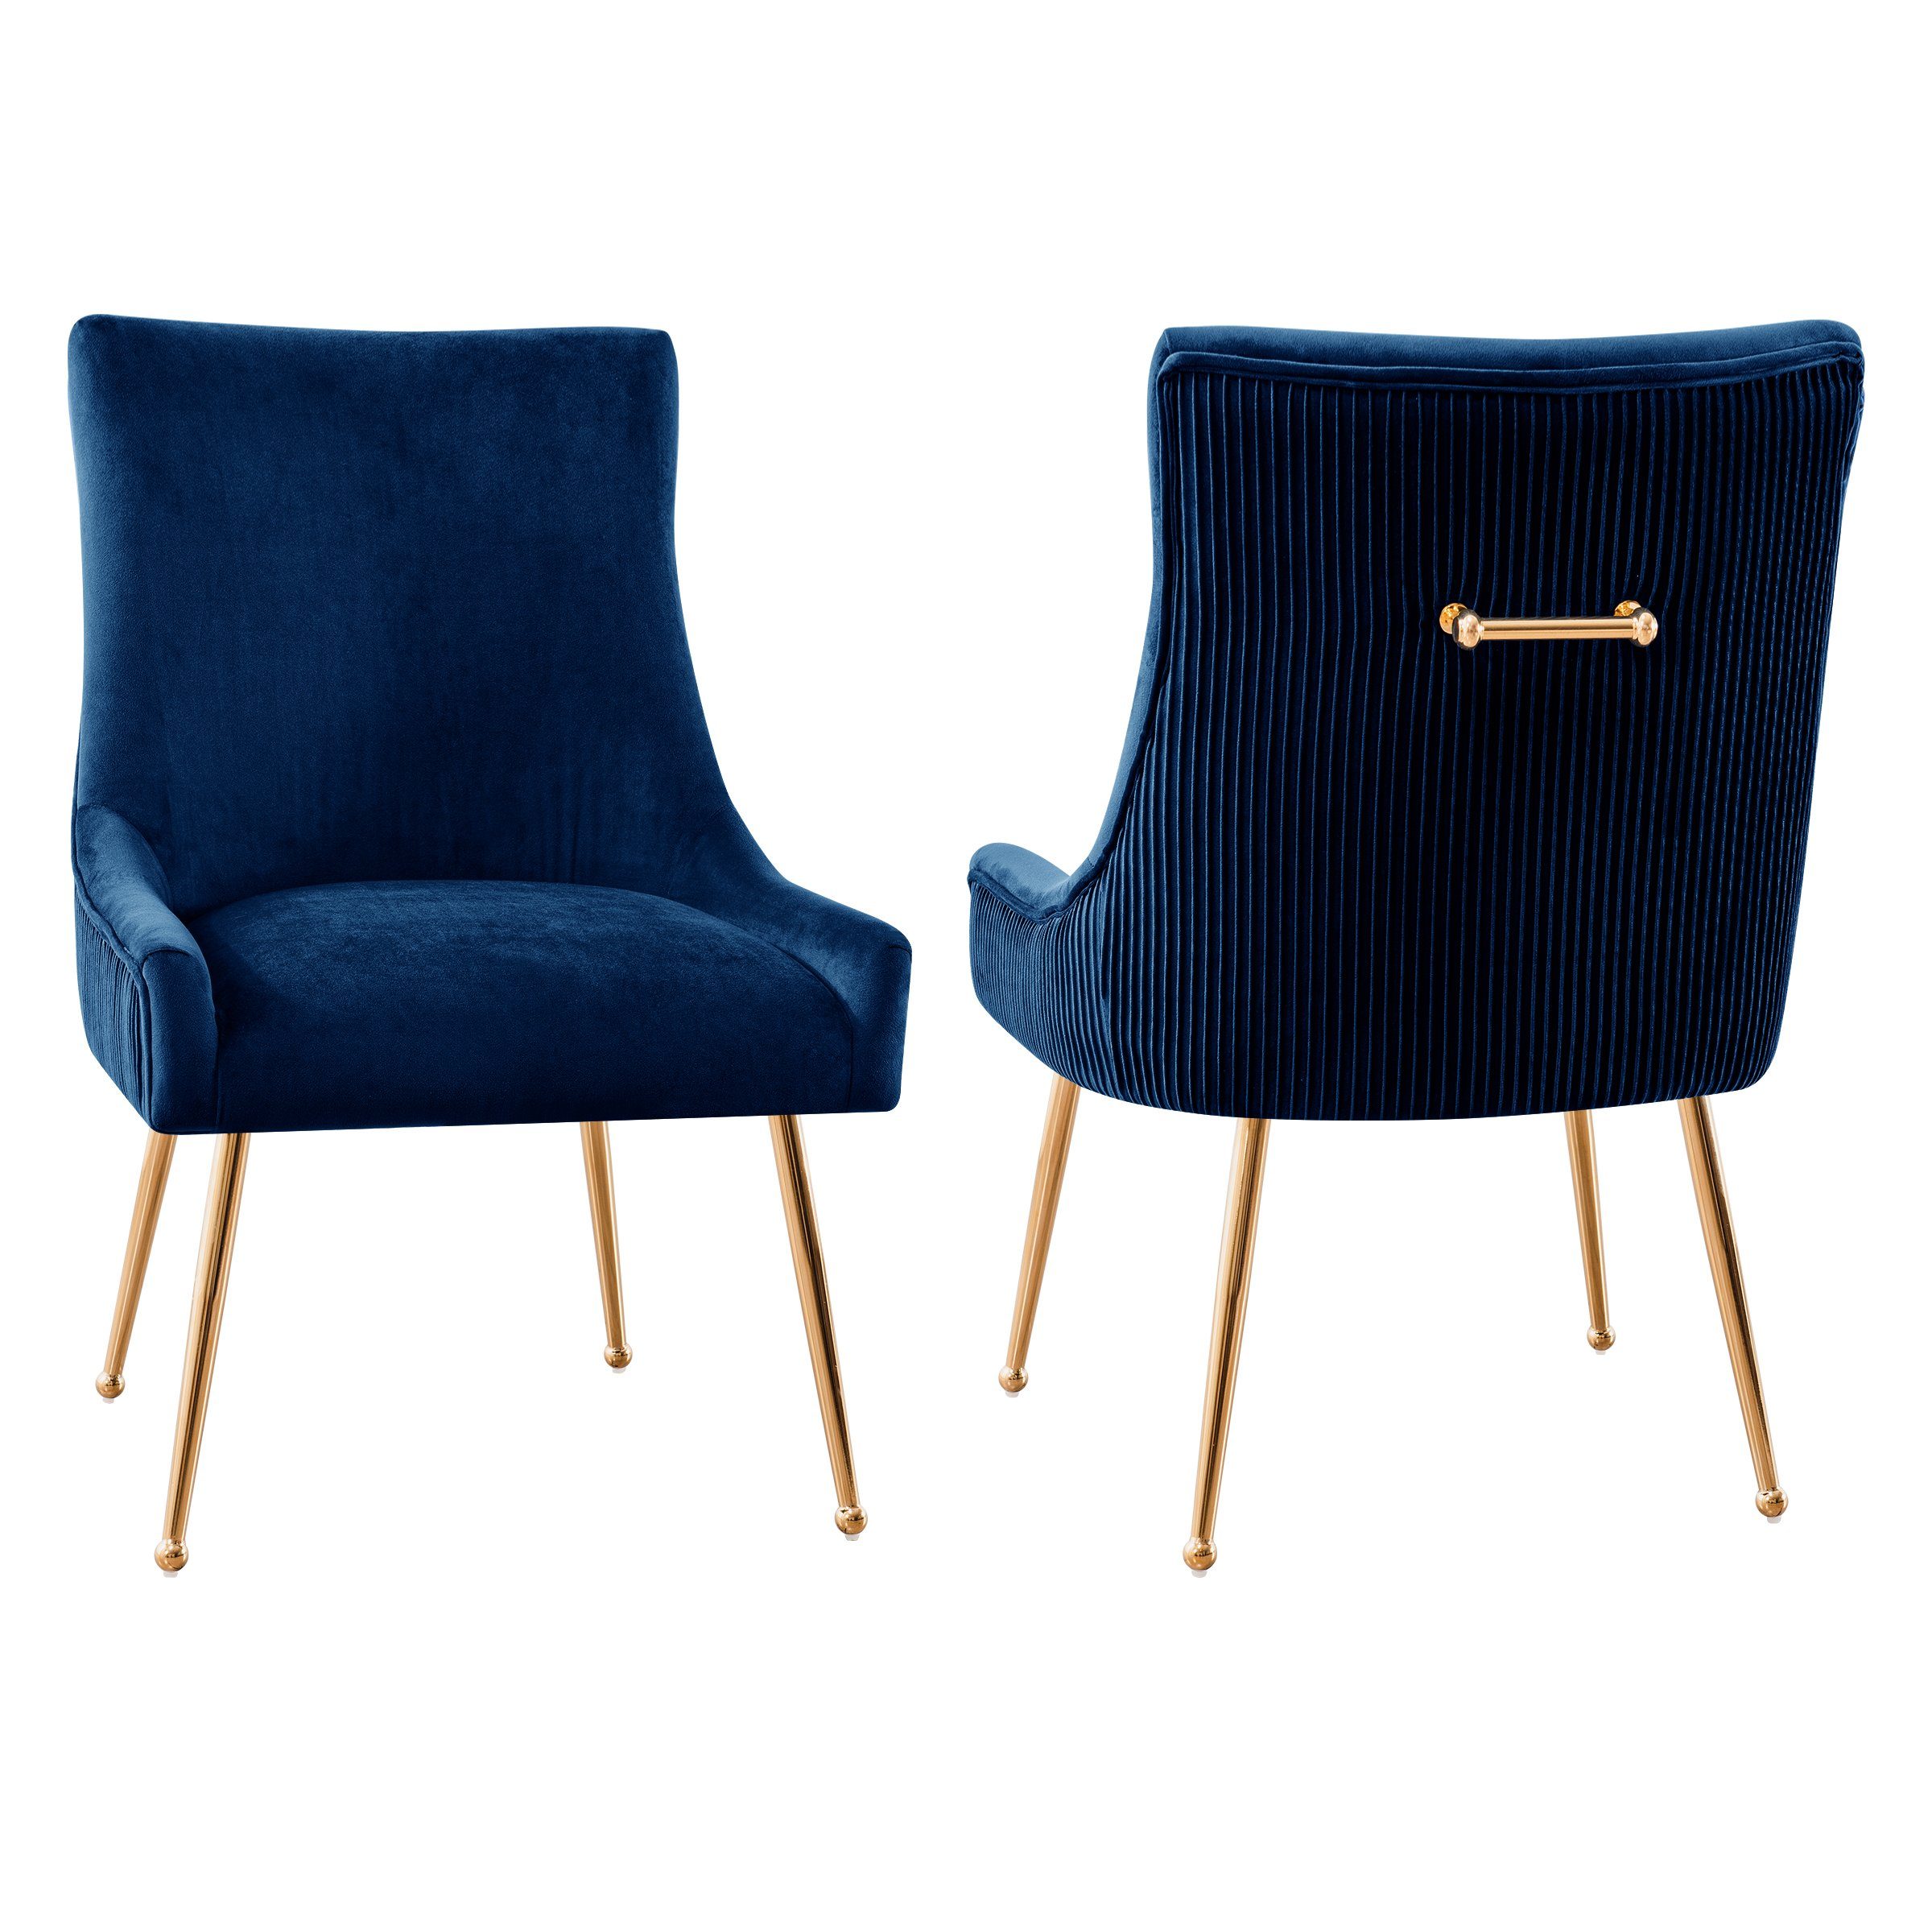 SUBRTEX Esszimmerstuhl Sessel mit Rückenlehne, 2er Set, Schwammpolster, Ständer aus Metall Marineblau